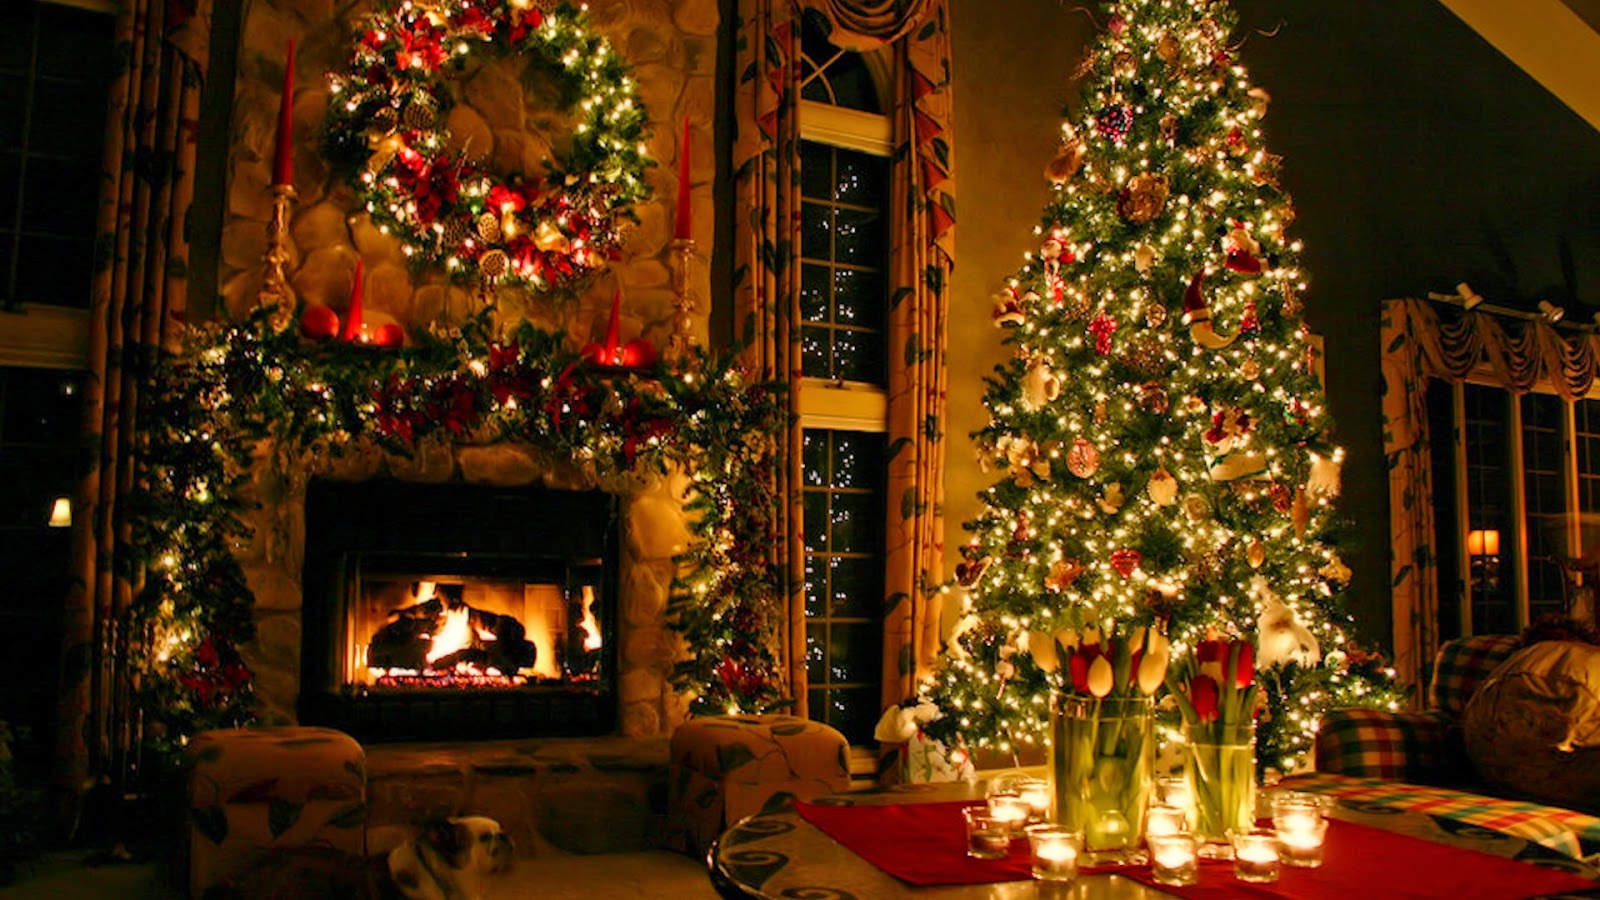 크리스마스 배경 화면 무료 라이브,크리스마스,크리스마스 트리,크리스마스 장식,크리스마스 장식,크리스마스 이브